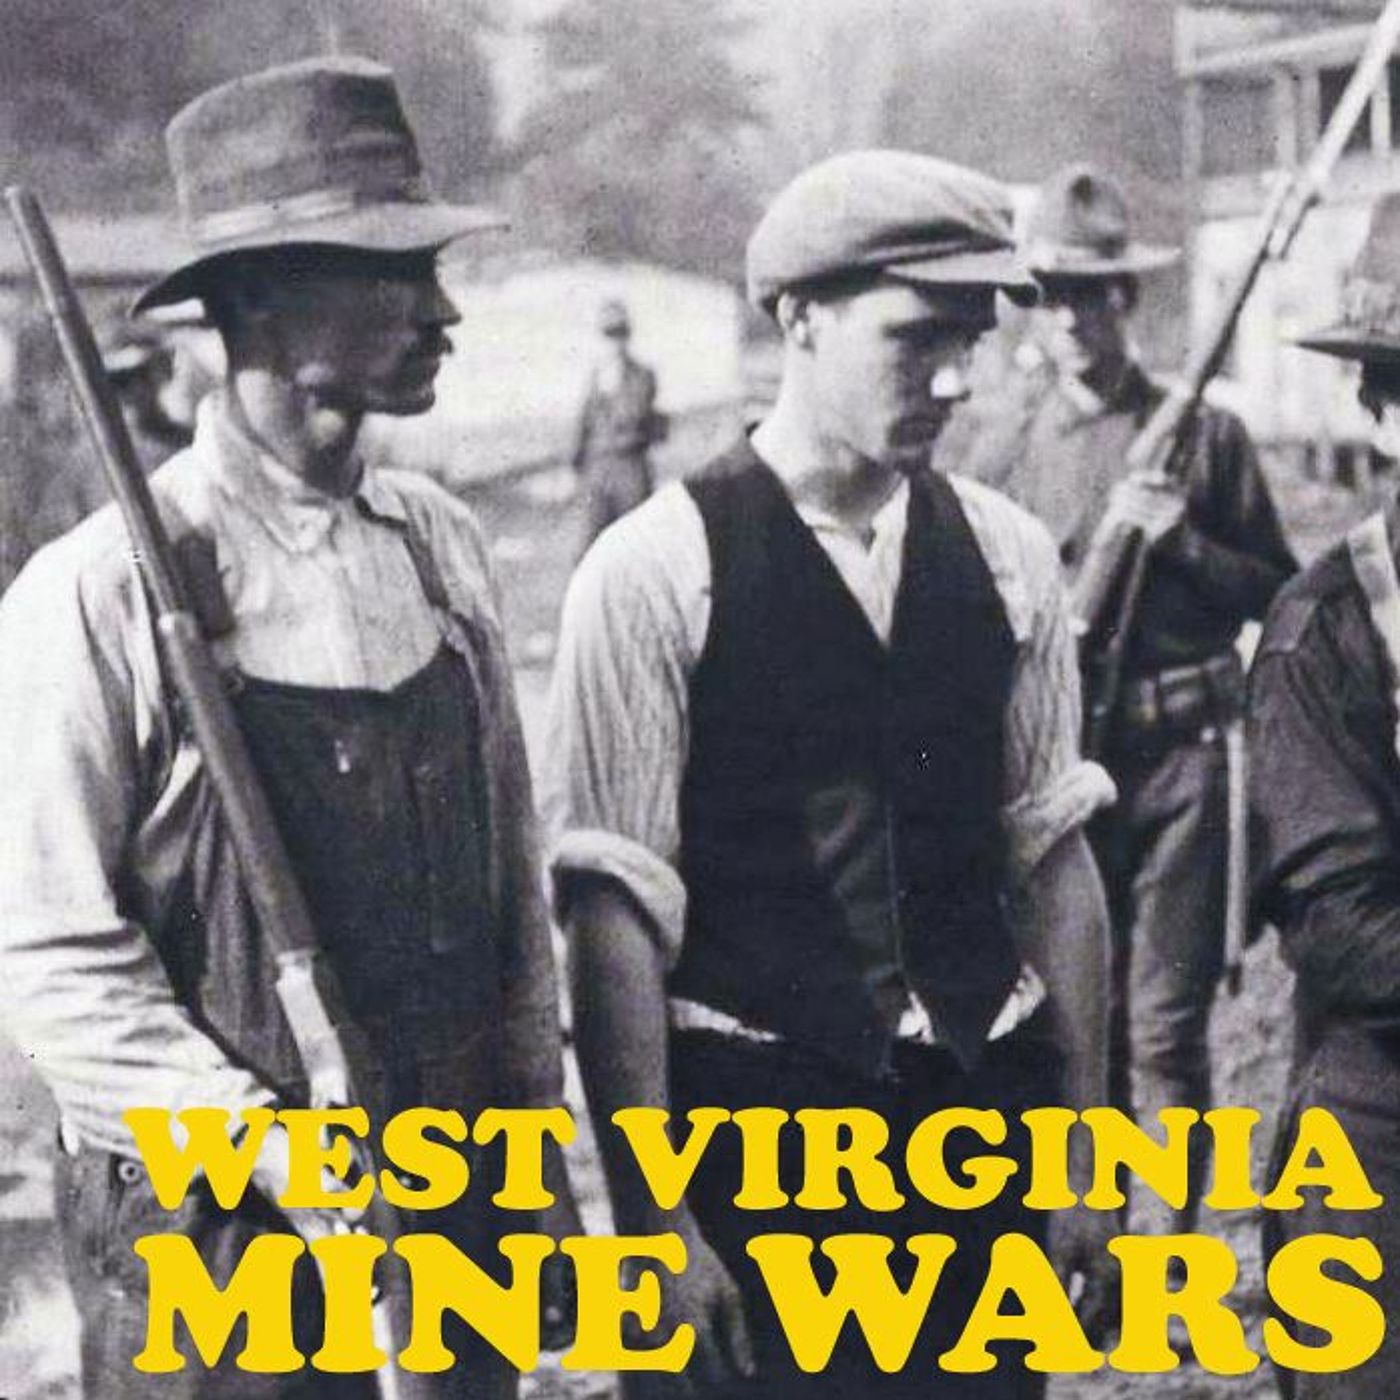 E58: West Virginia Mine Wars, part 2